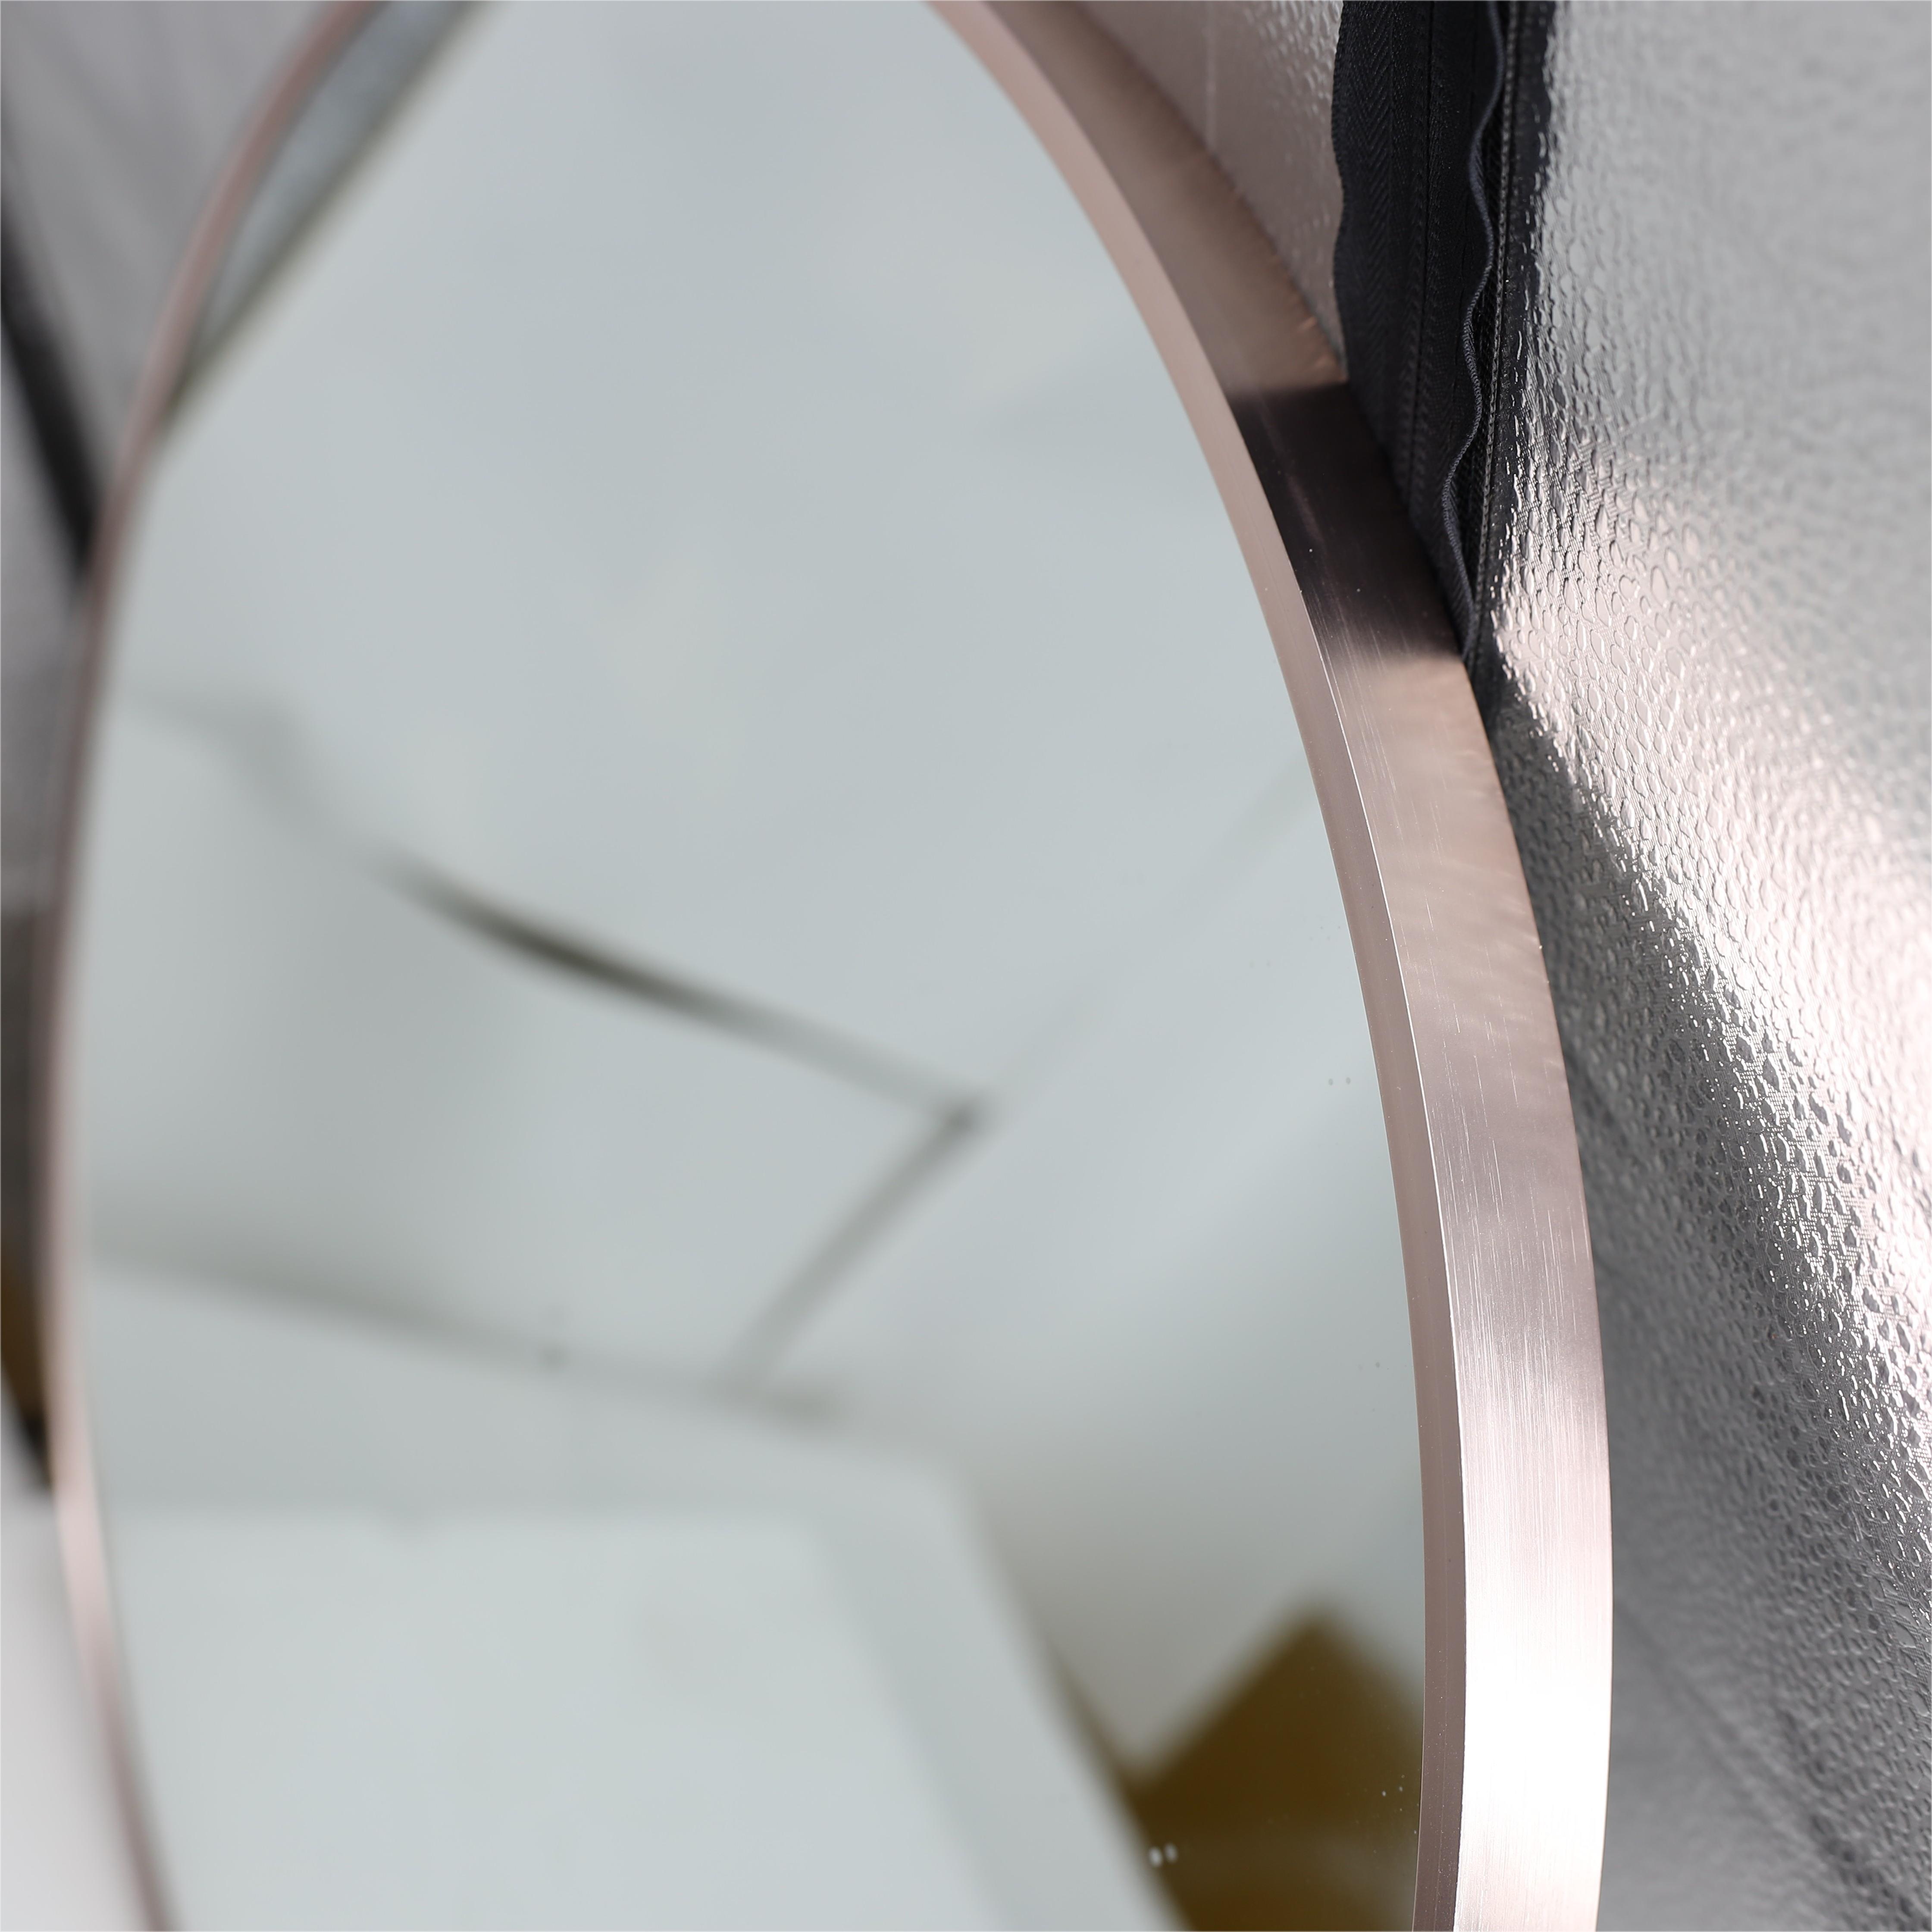 铝合金欧式北欧风浴室圆镜子挂墙式洗手间化妆镜壁挂镜卫浴镜子